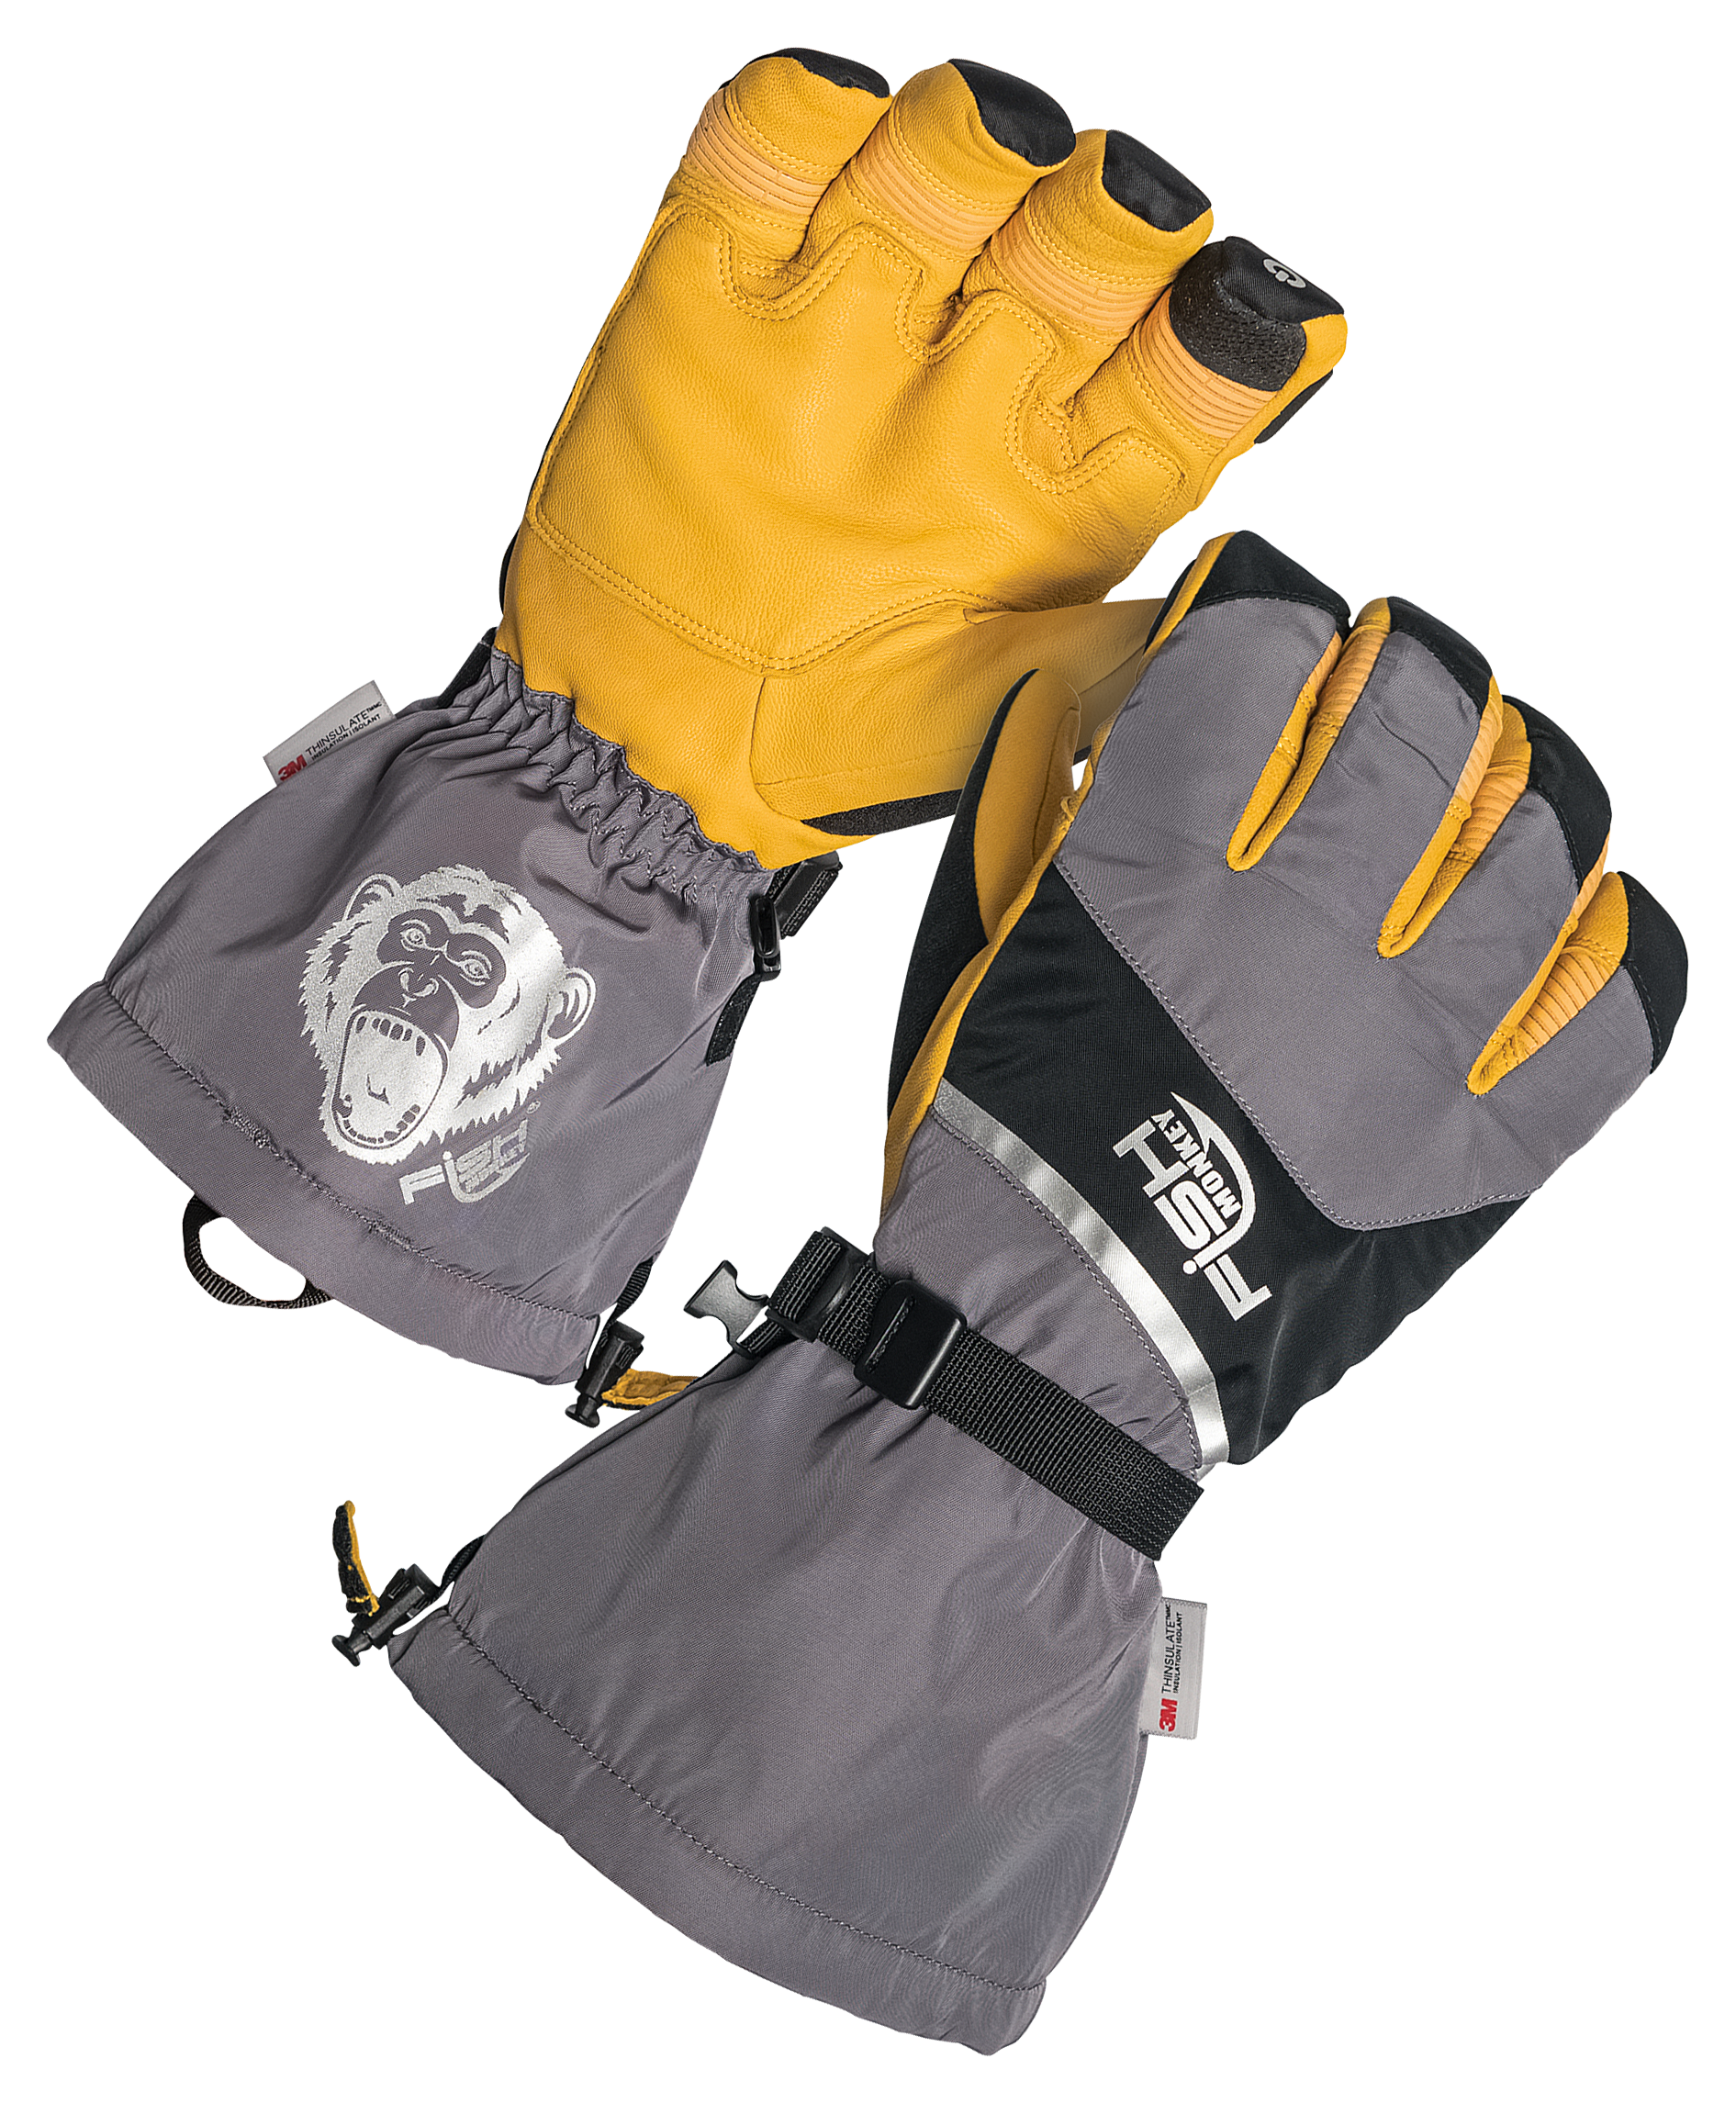 Yeti Premium Ice Fishing Glove – Fishmonkey Gloves